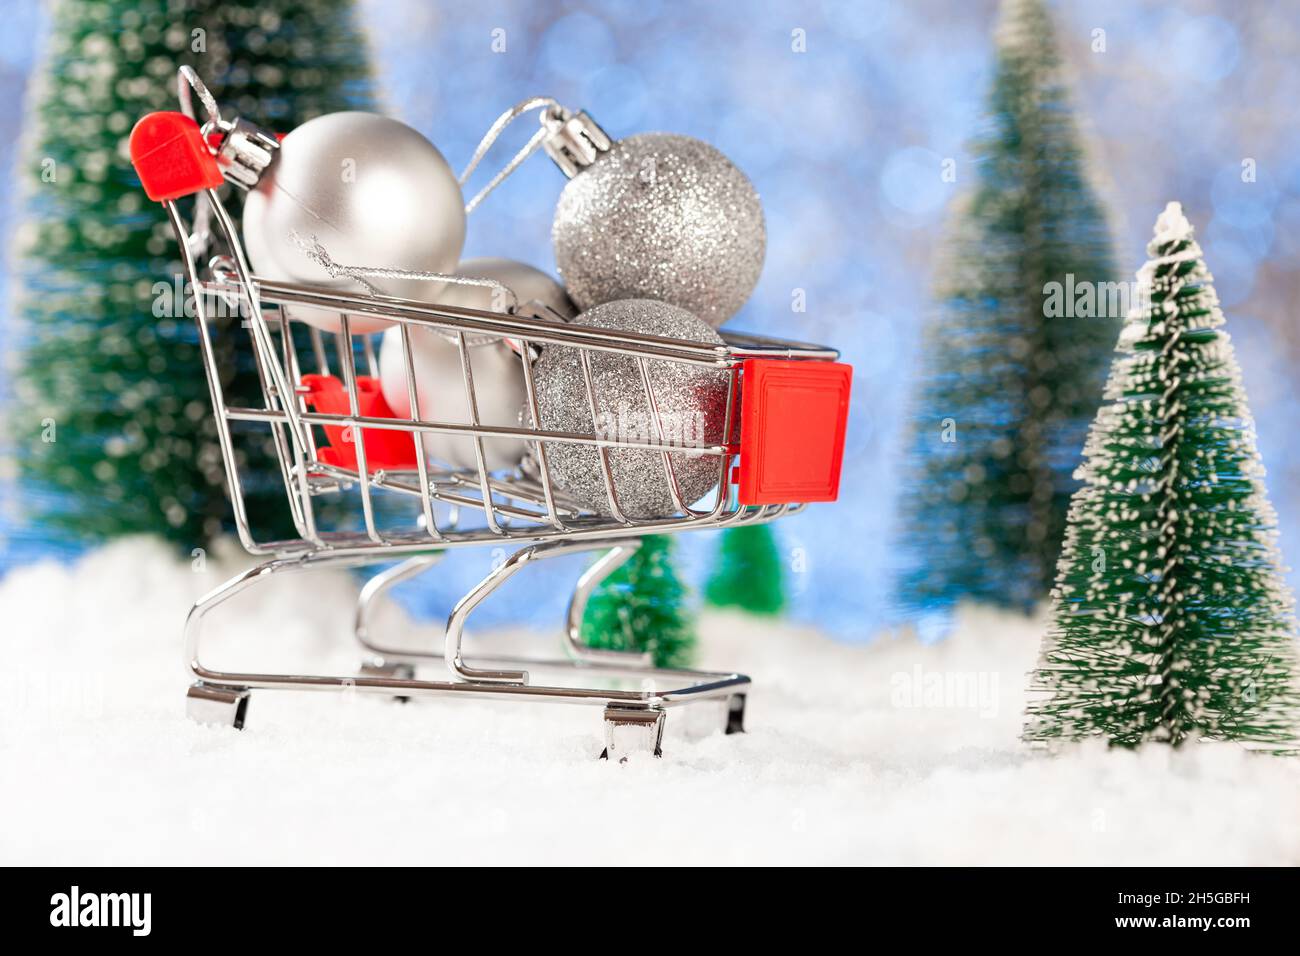 Kauf von Weihnachtsbaumschmuck. Kleine silberne Weihnachtskugeln in einem Supermarktkorb Stockfoto